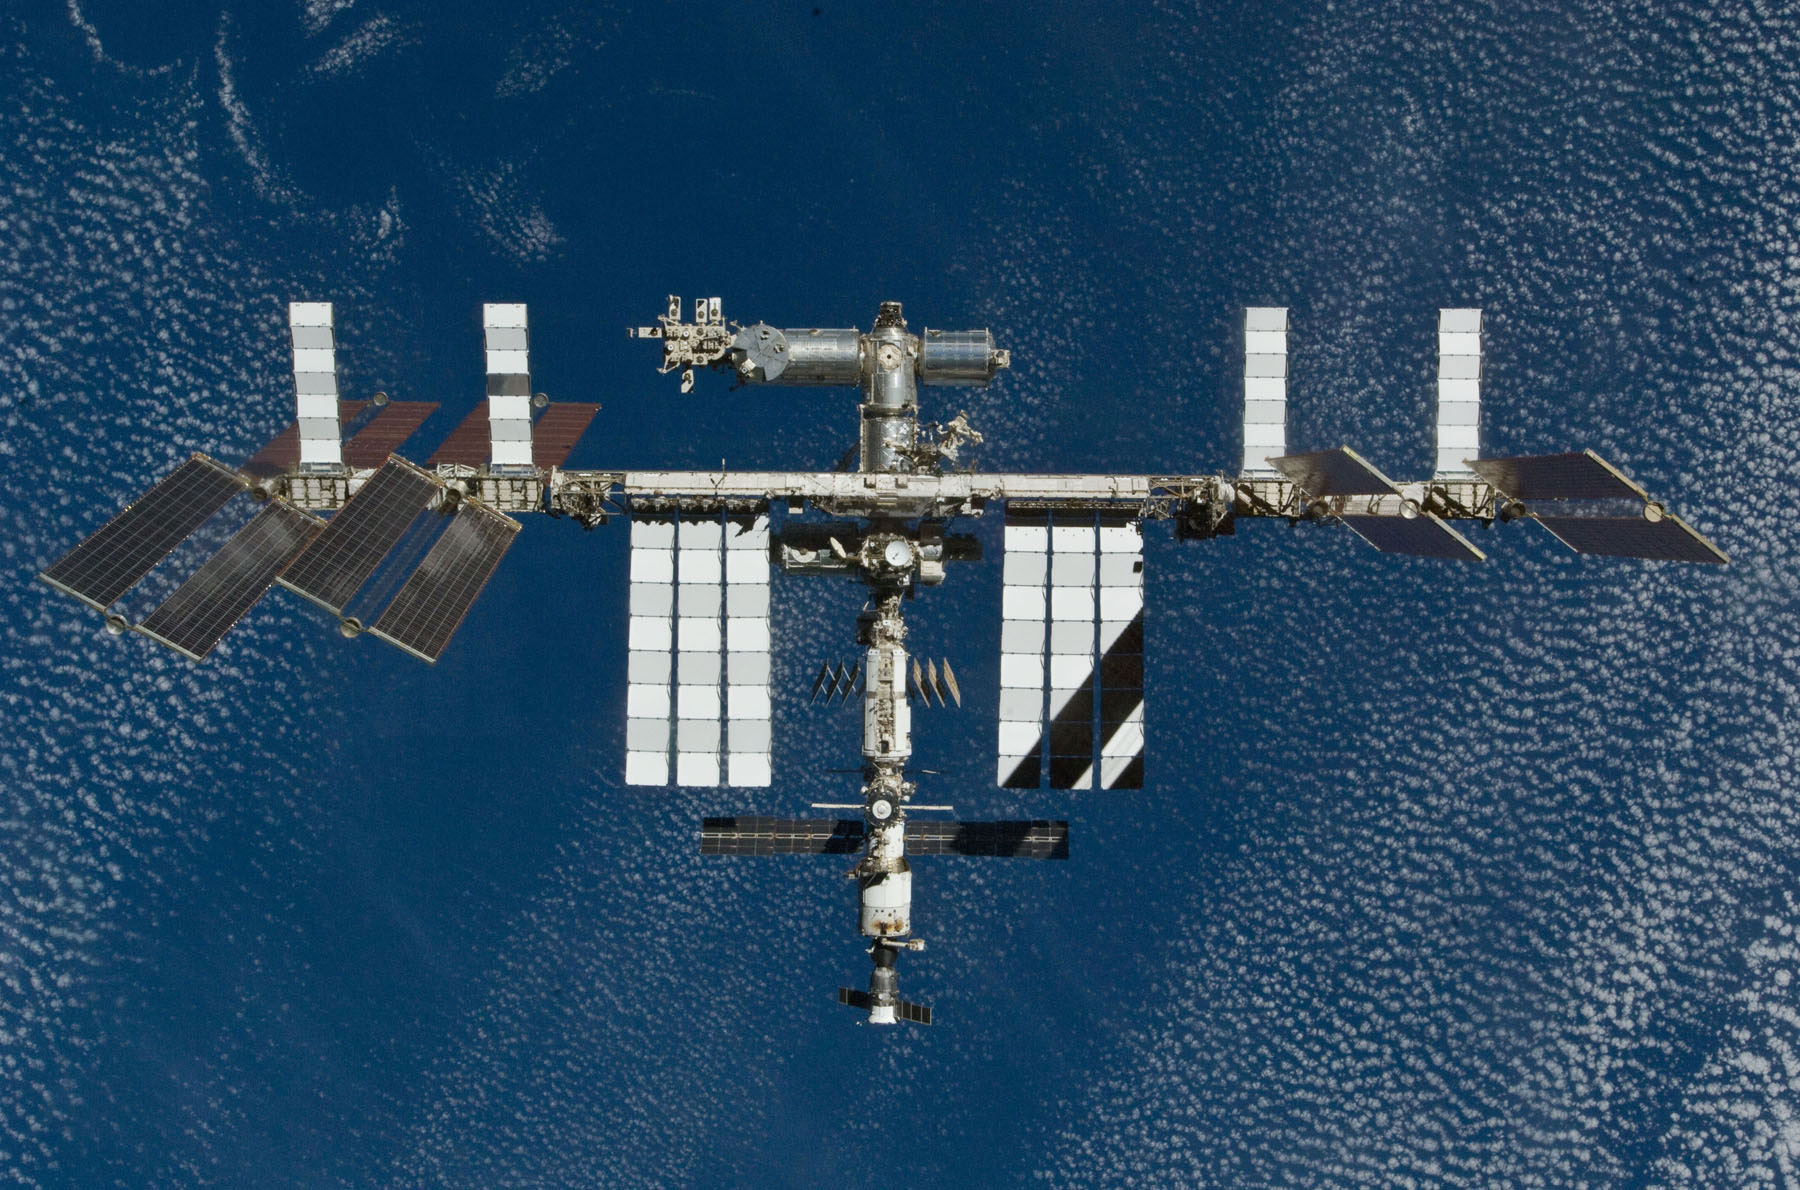 Le segment russe de l'ISS reste actuellement indispensable. En effet, le module Zvezda et les cargos Progress, nécessaires au pilotage de la Station, ne s’amarrent qu’à la partie russe. La Nasa doit donc réfléchir à d'autres solutions d'amarrage. © Nasa